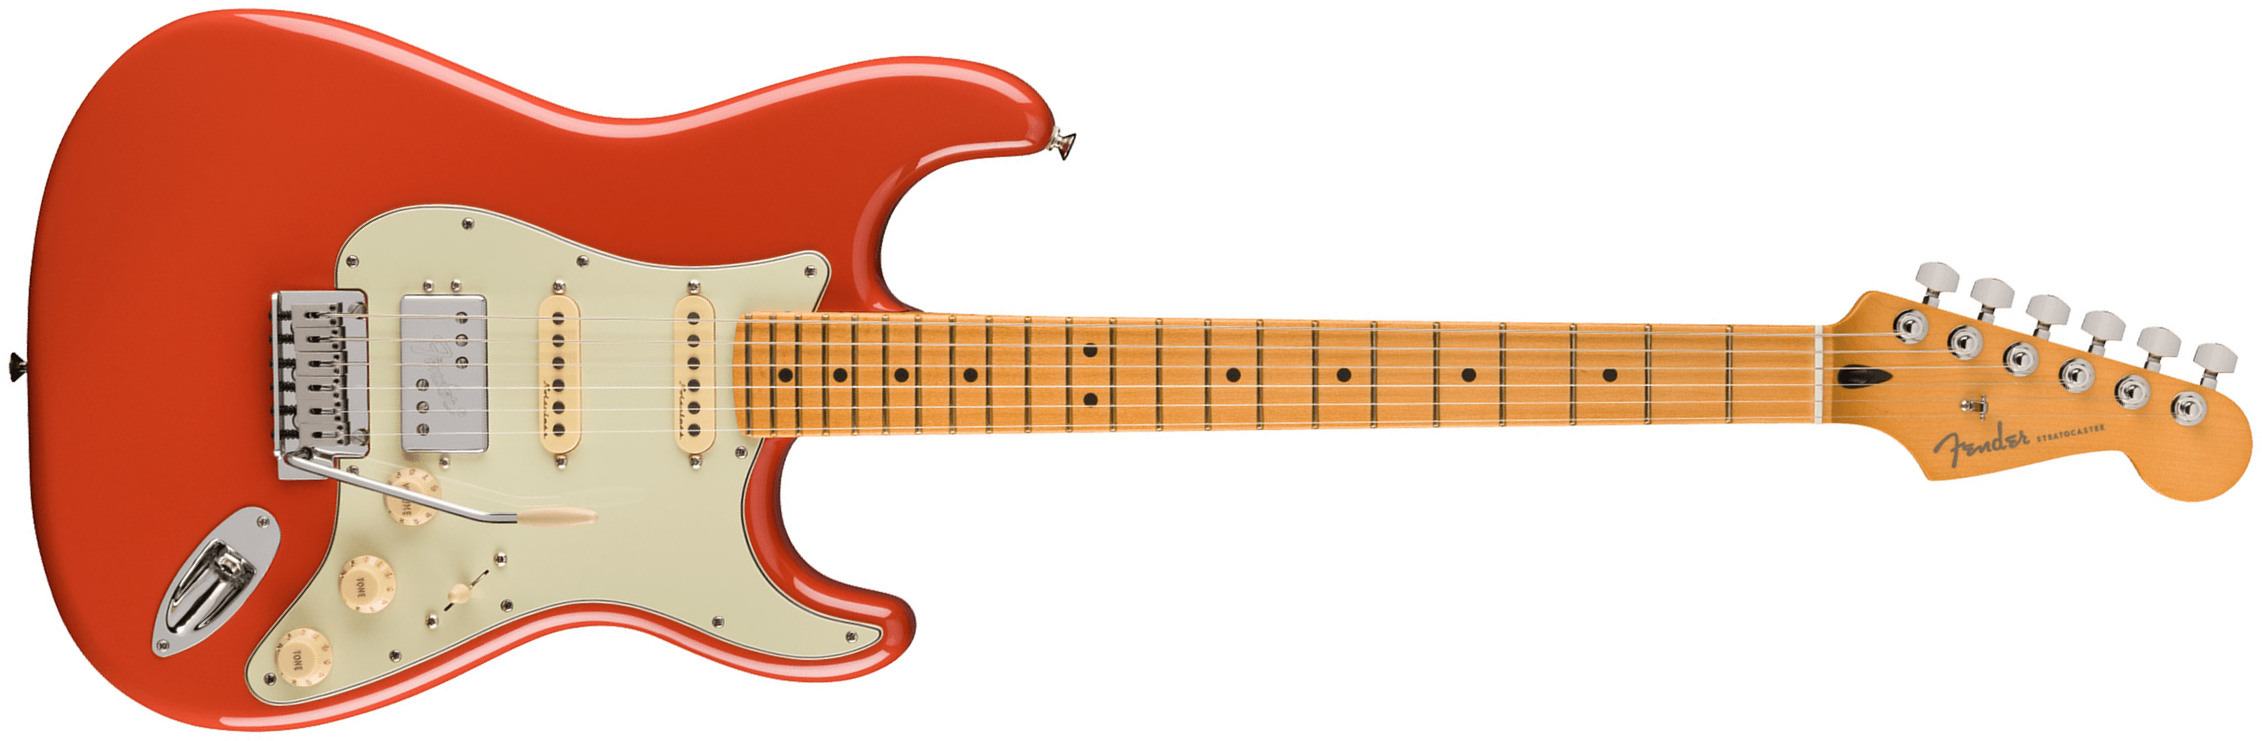 Fender Strat Player Plus Mex 2023 Hss Trem Mn - Fiesta Red - Elektrische gitaar in Str-vorm - Main picture